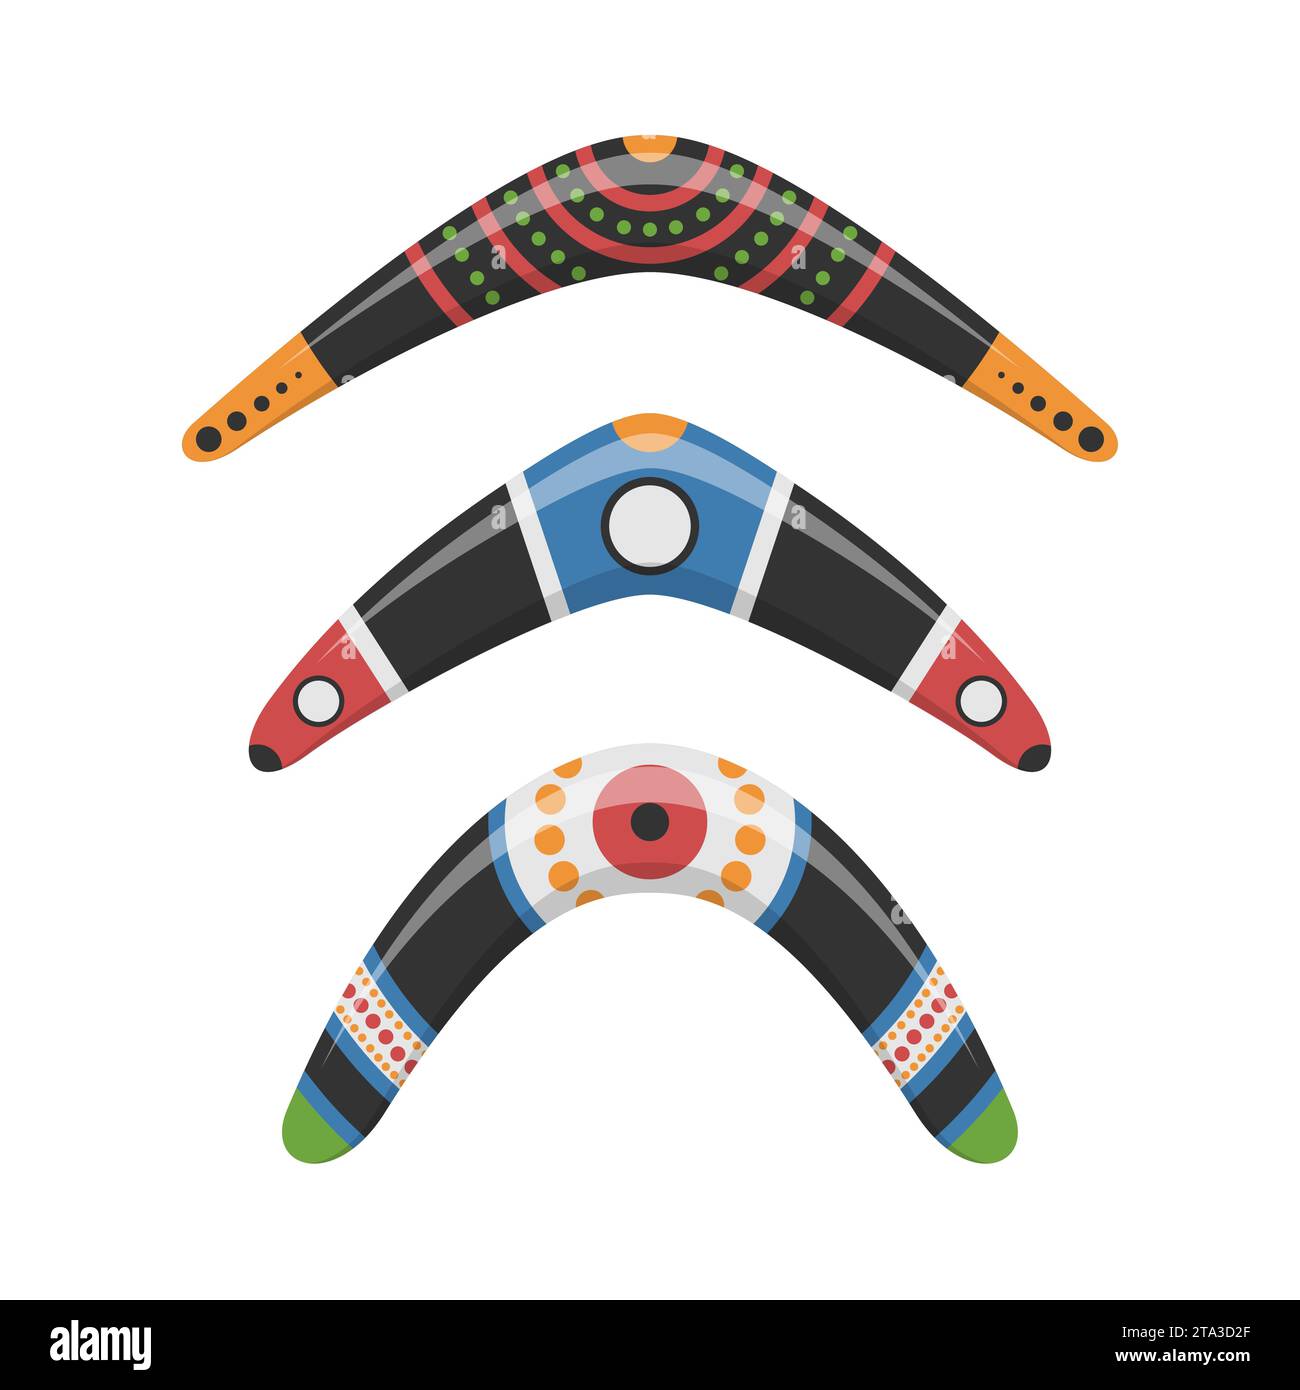 Boomerang traditionnel en bois de différentes formes icônes ensemble isolé sur fond blanc. Arme de chasse et de sport australienne. Bois aborigène Illustration de Vecteur